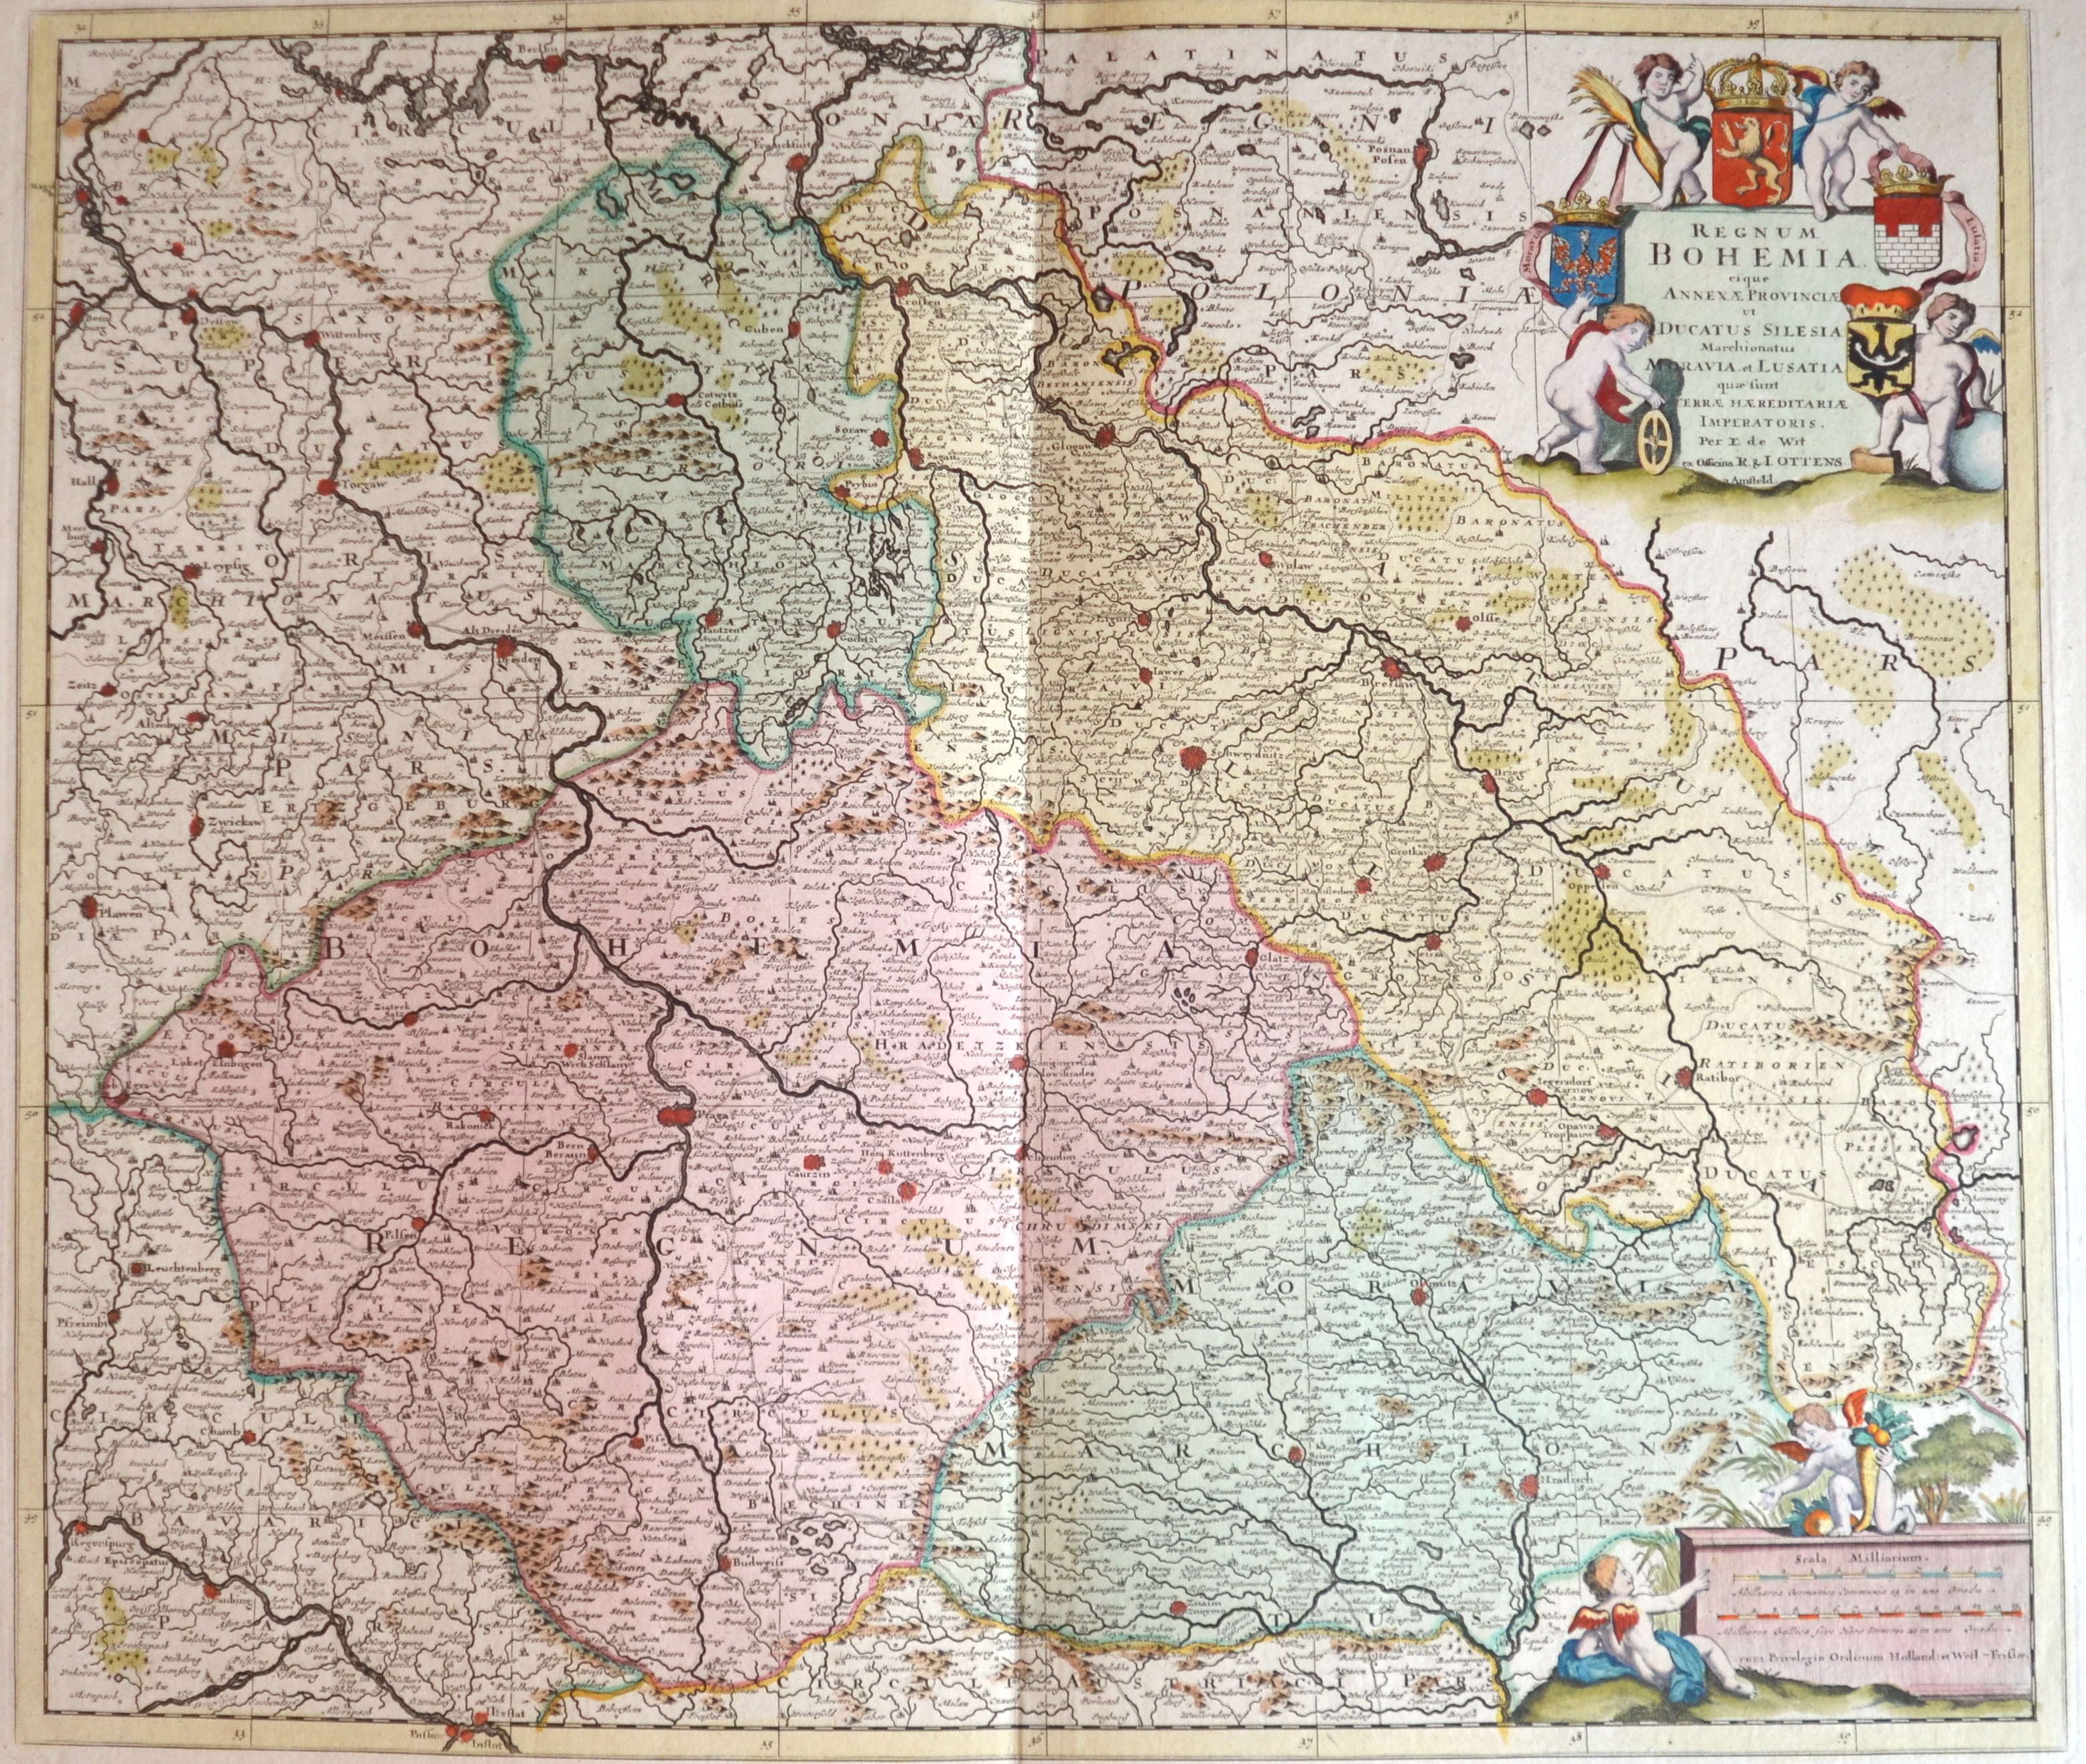 Ottens  Regnum Bohemia. Eique Annexae Provinciae ut Ducatus Silesia Marchionatus Moravia et Lusatia